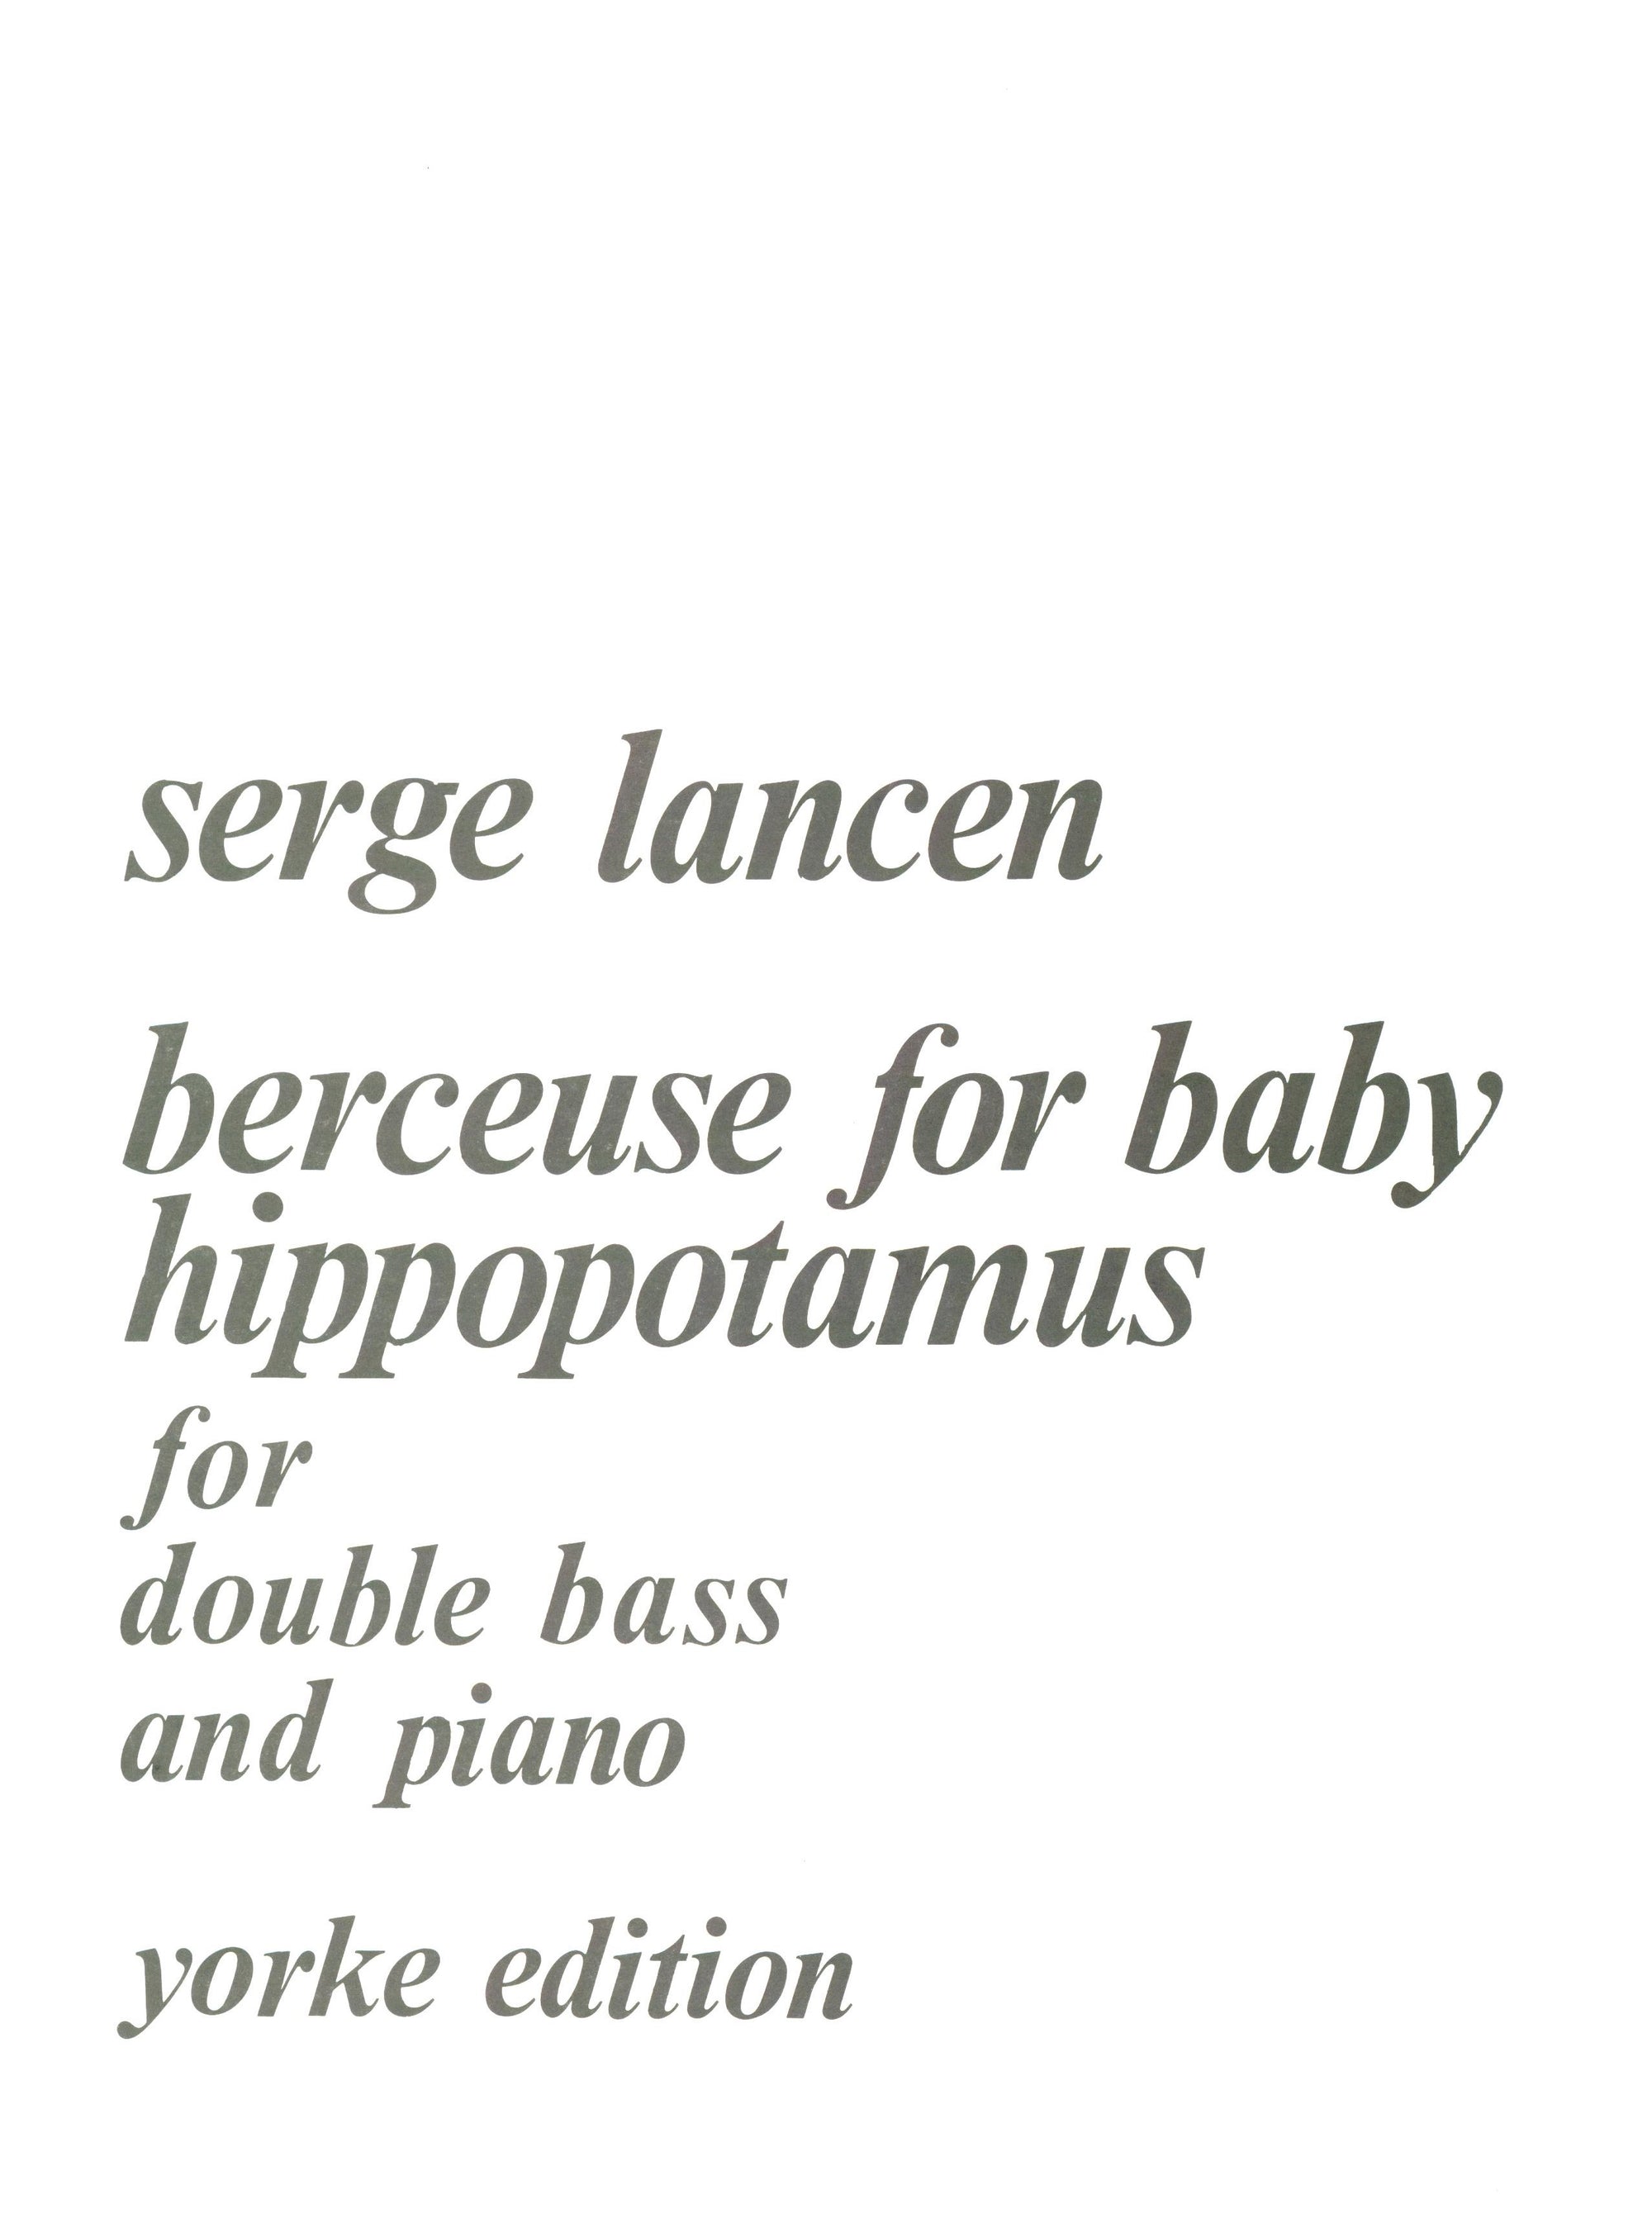 Lancen: Berceuse for baby hippopotamus